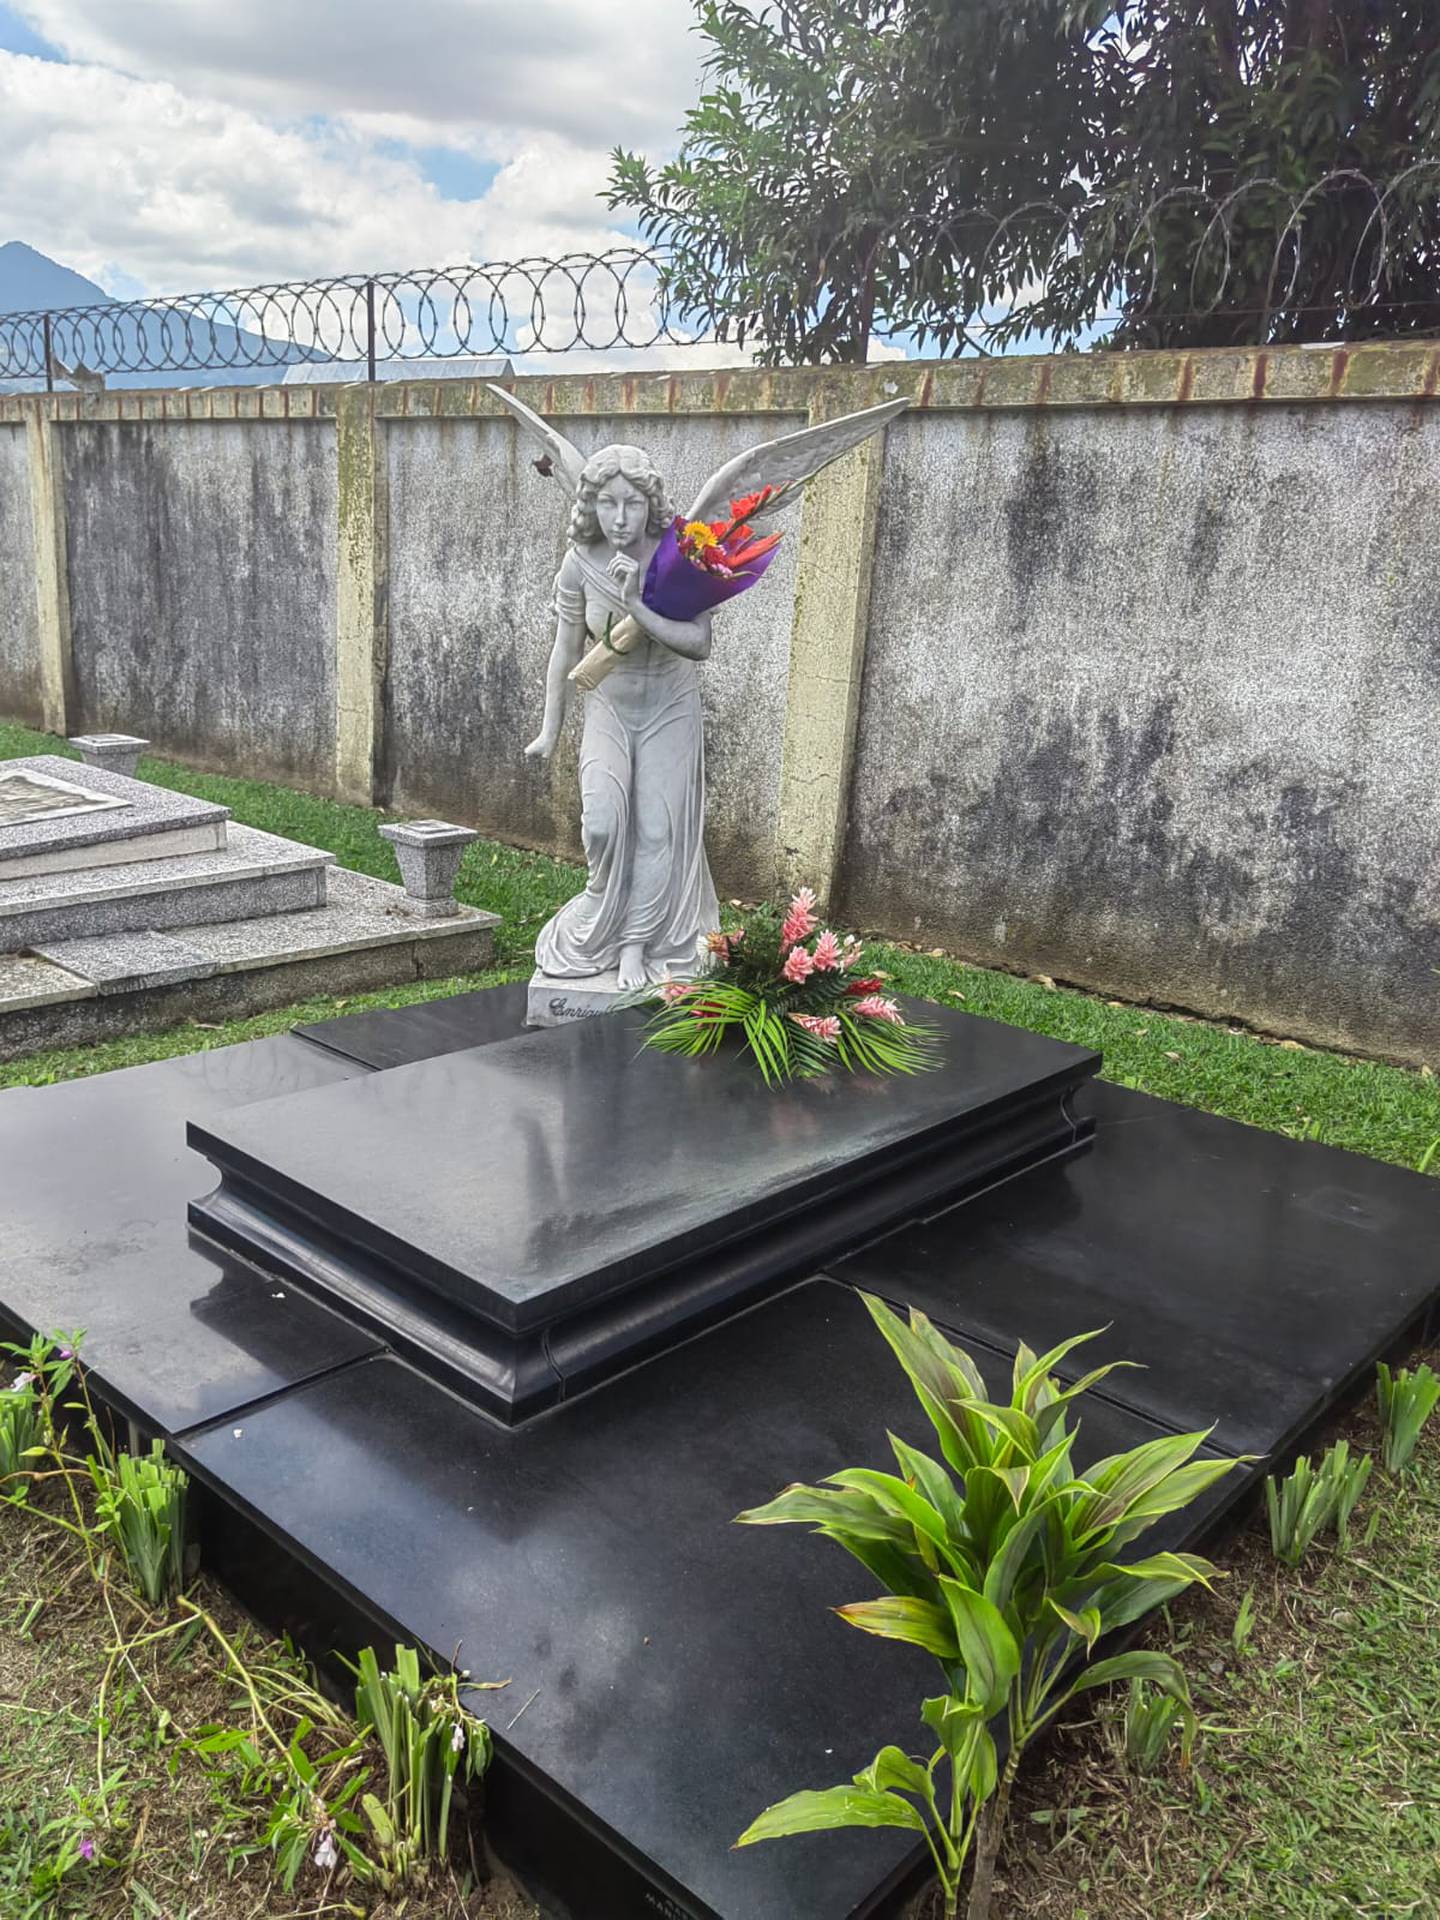 El 2 de noviembre del 2022 significó el regreso de la apertura total de los cementerios, después del cierre total y parcial en 2020 y 2021 por la pandemia